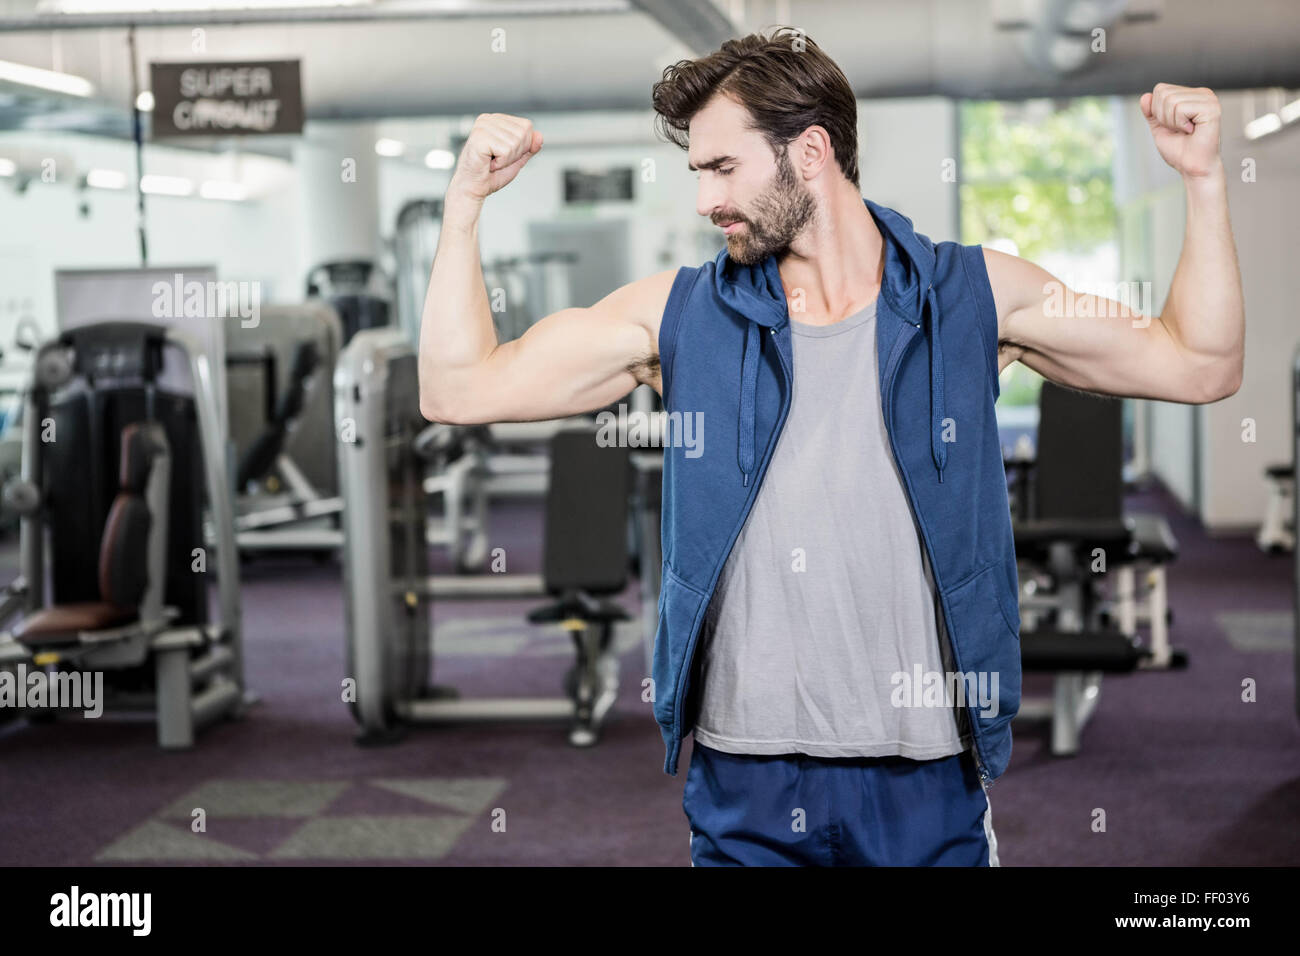 Muscular man showing biceps Stock Photo